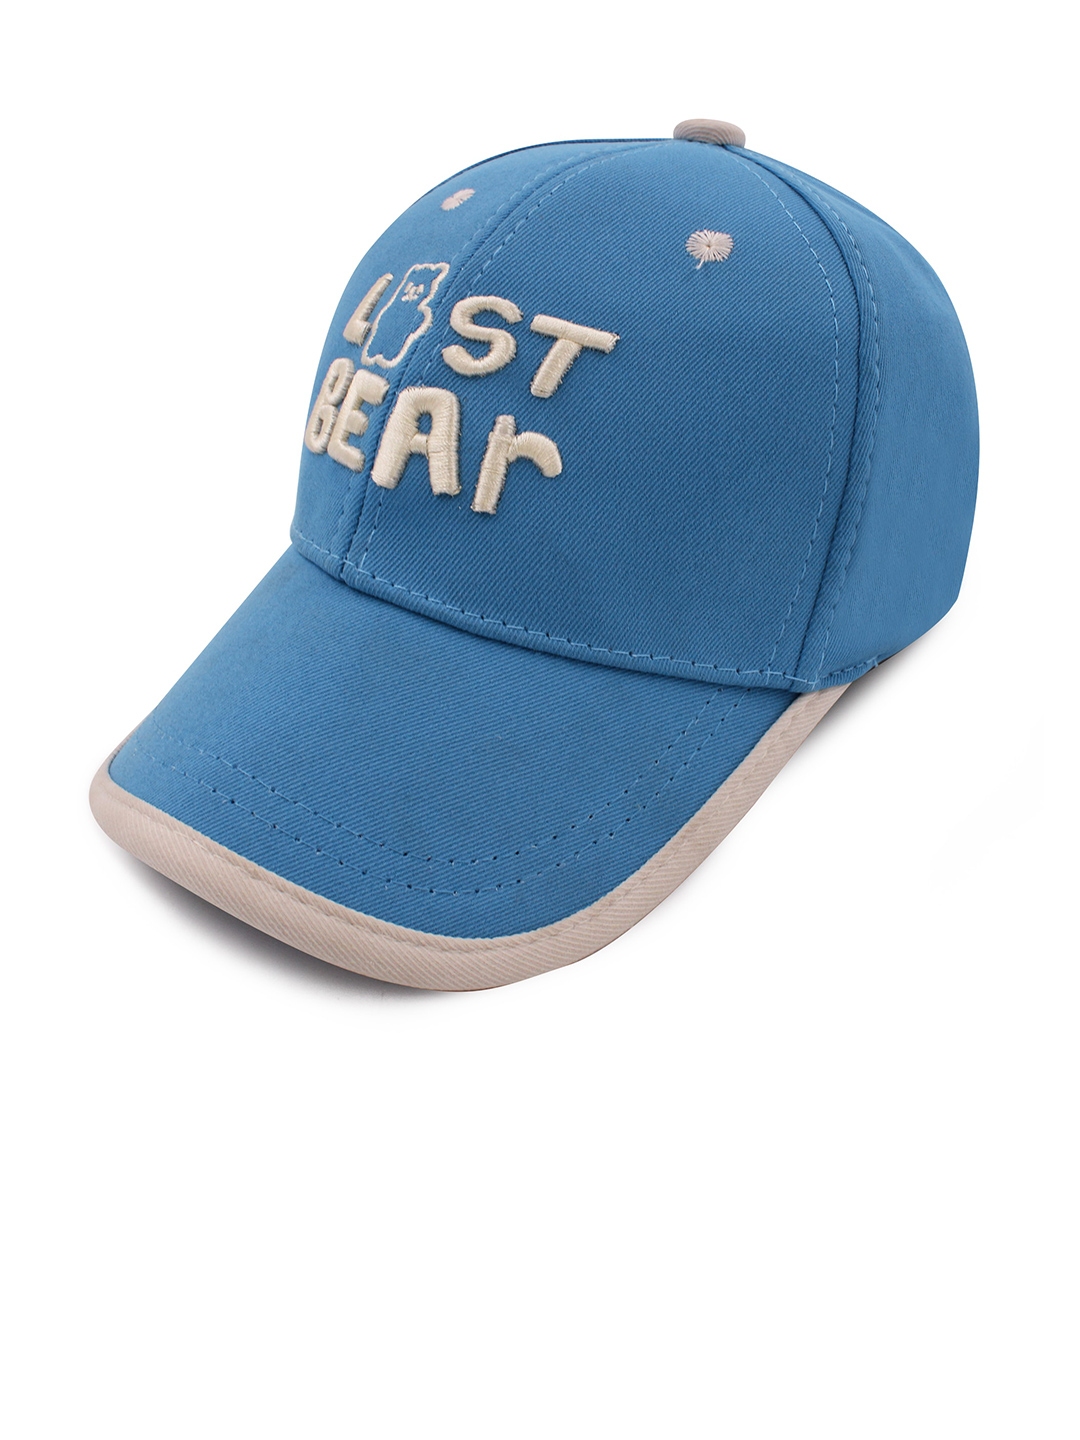 Buy JENNA Kids Embroidered Baseball Cap - Caps for Unisex Kids 24906236 ...